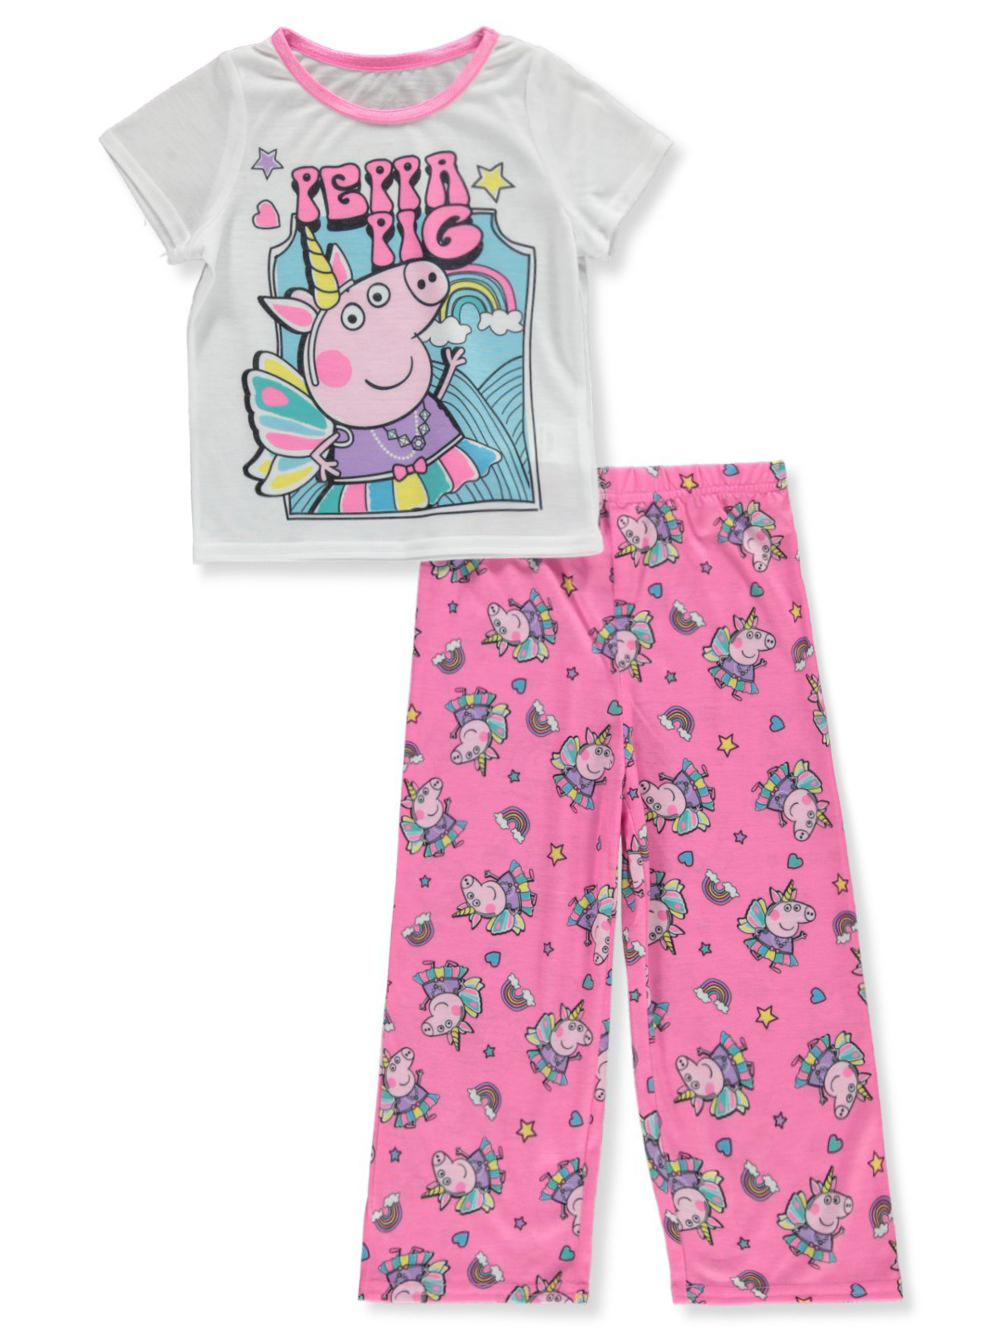 Nickelodeon Peppa Pig Girls' 2-Piece Pajamas Set